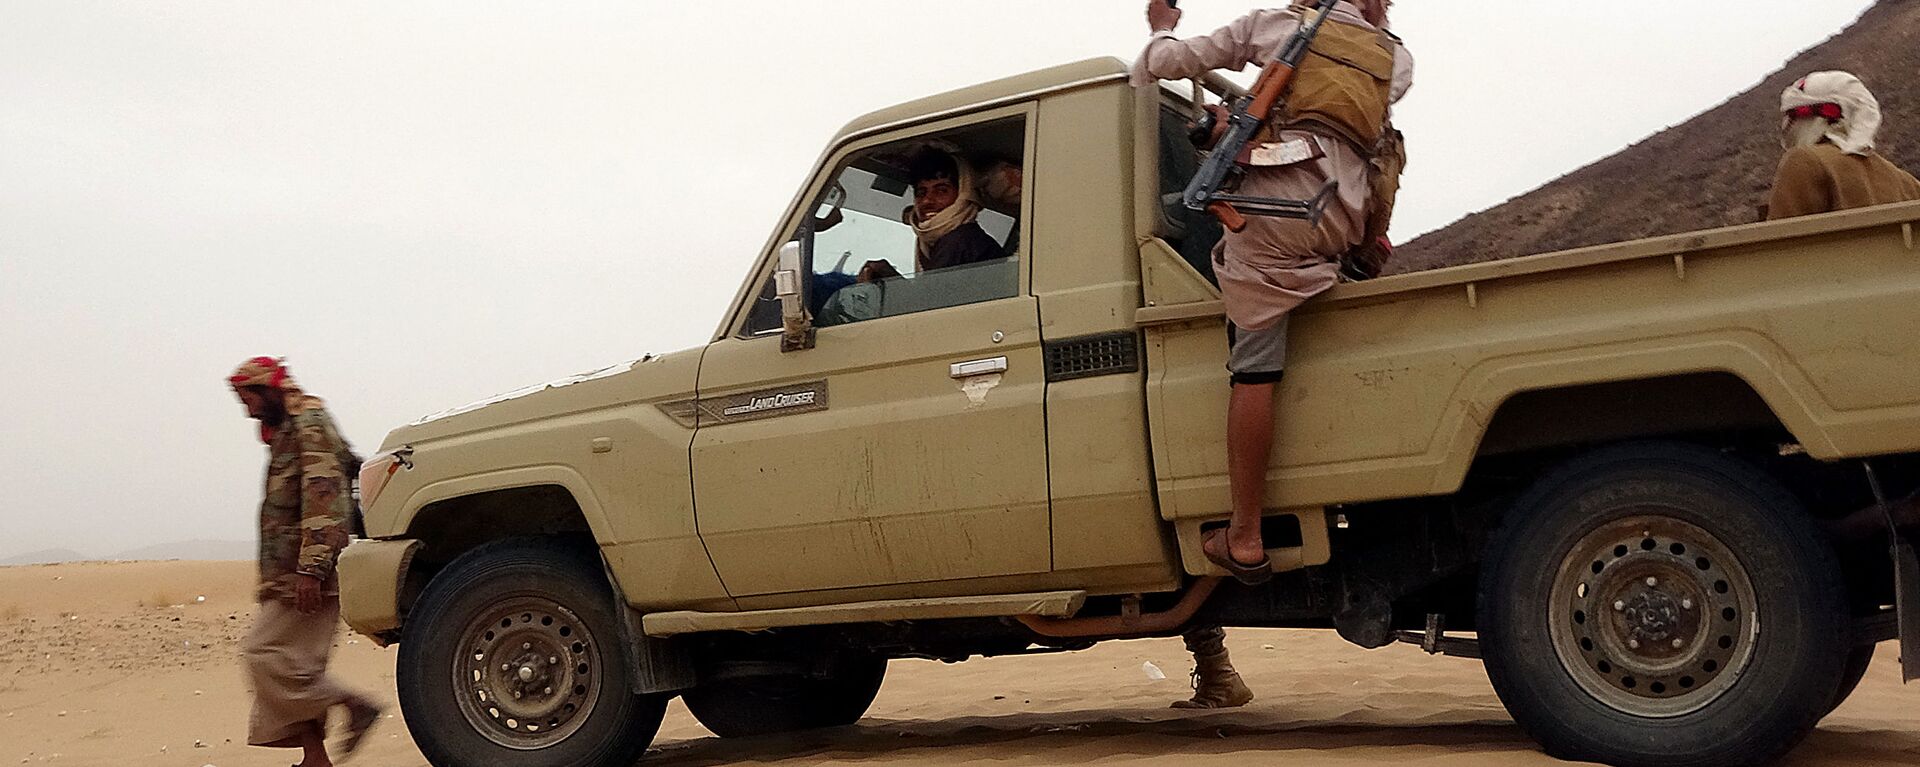 القوات الموالية لقوات التحالف العربي بقيادة السعودية، على الجبهة القتالية ضد أنصار الله الحوثيين، شمال شرق محافظة مأرب، اليمن 27 أبريل 2021 - سبوتنيك عربي, 1920, 27.07.2021